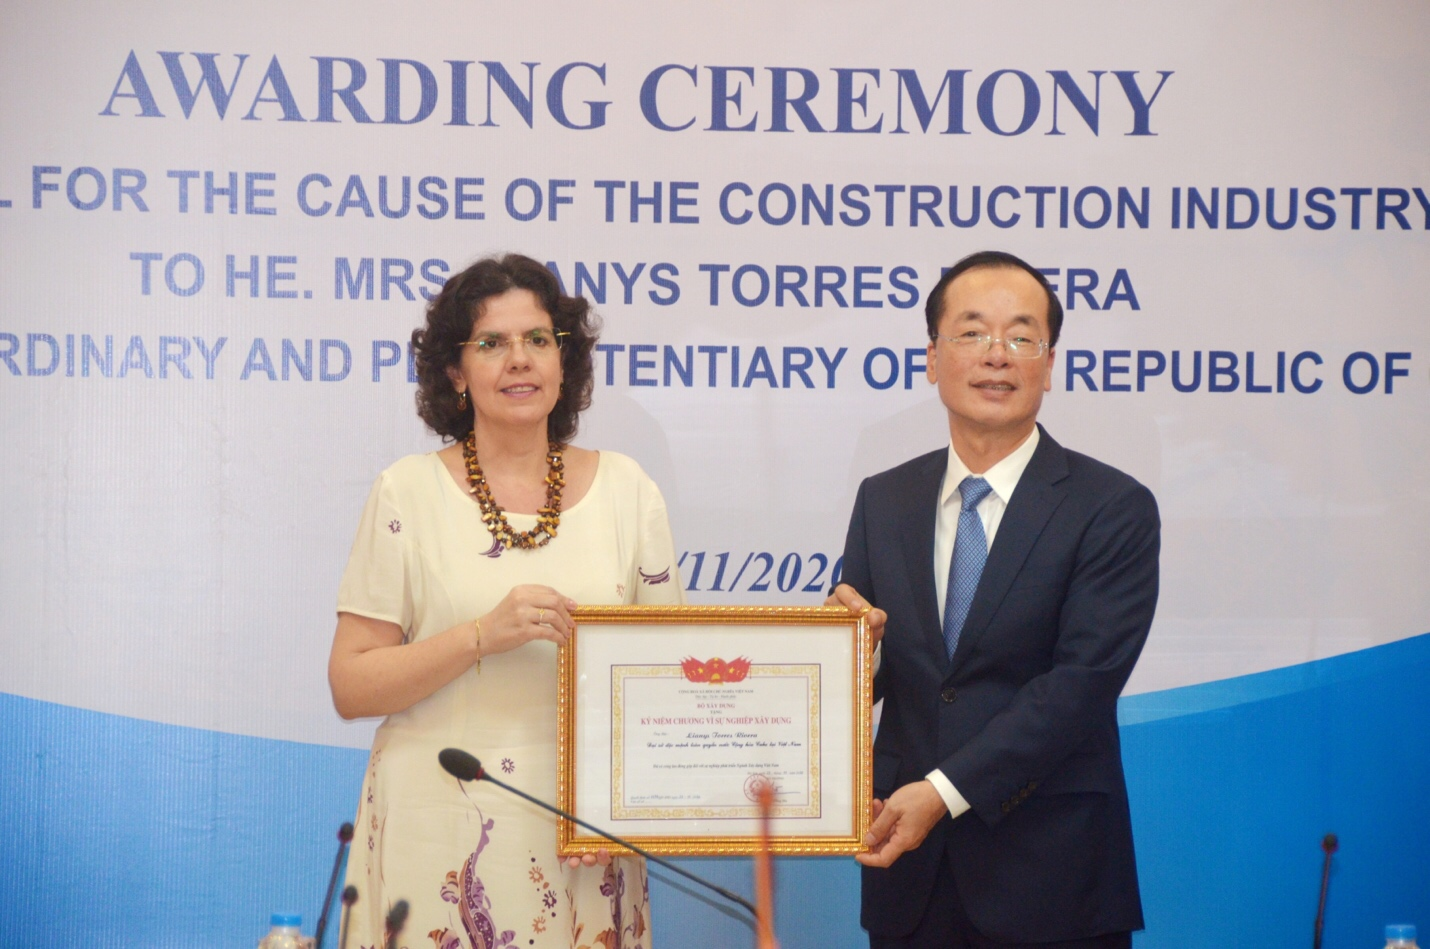 Trao tặng “Kỷ niệm chương vì sự nghiệp Xây dựng” cho Đại sứ Cuba tại Việt Nam